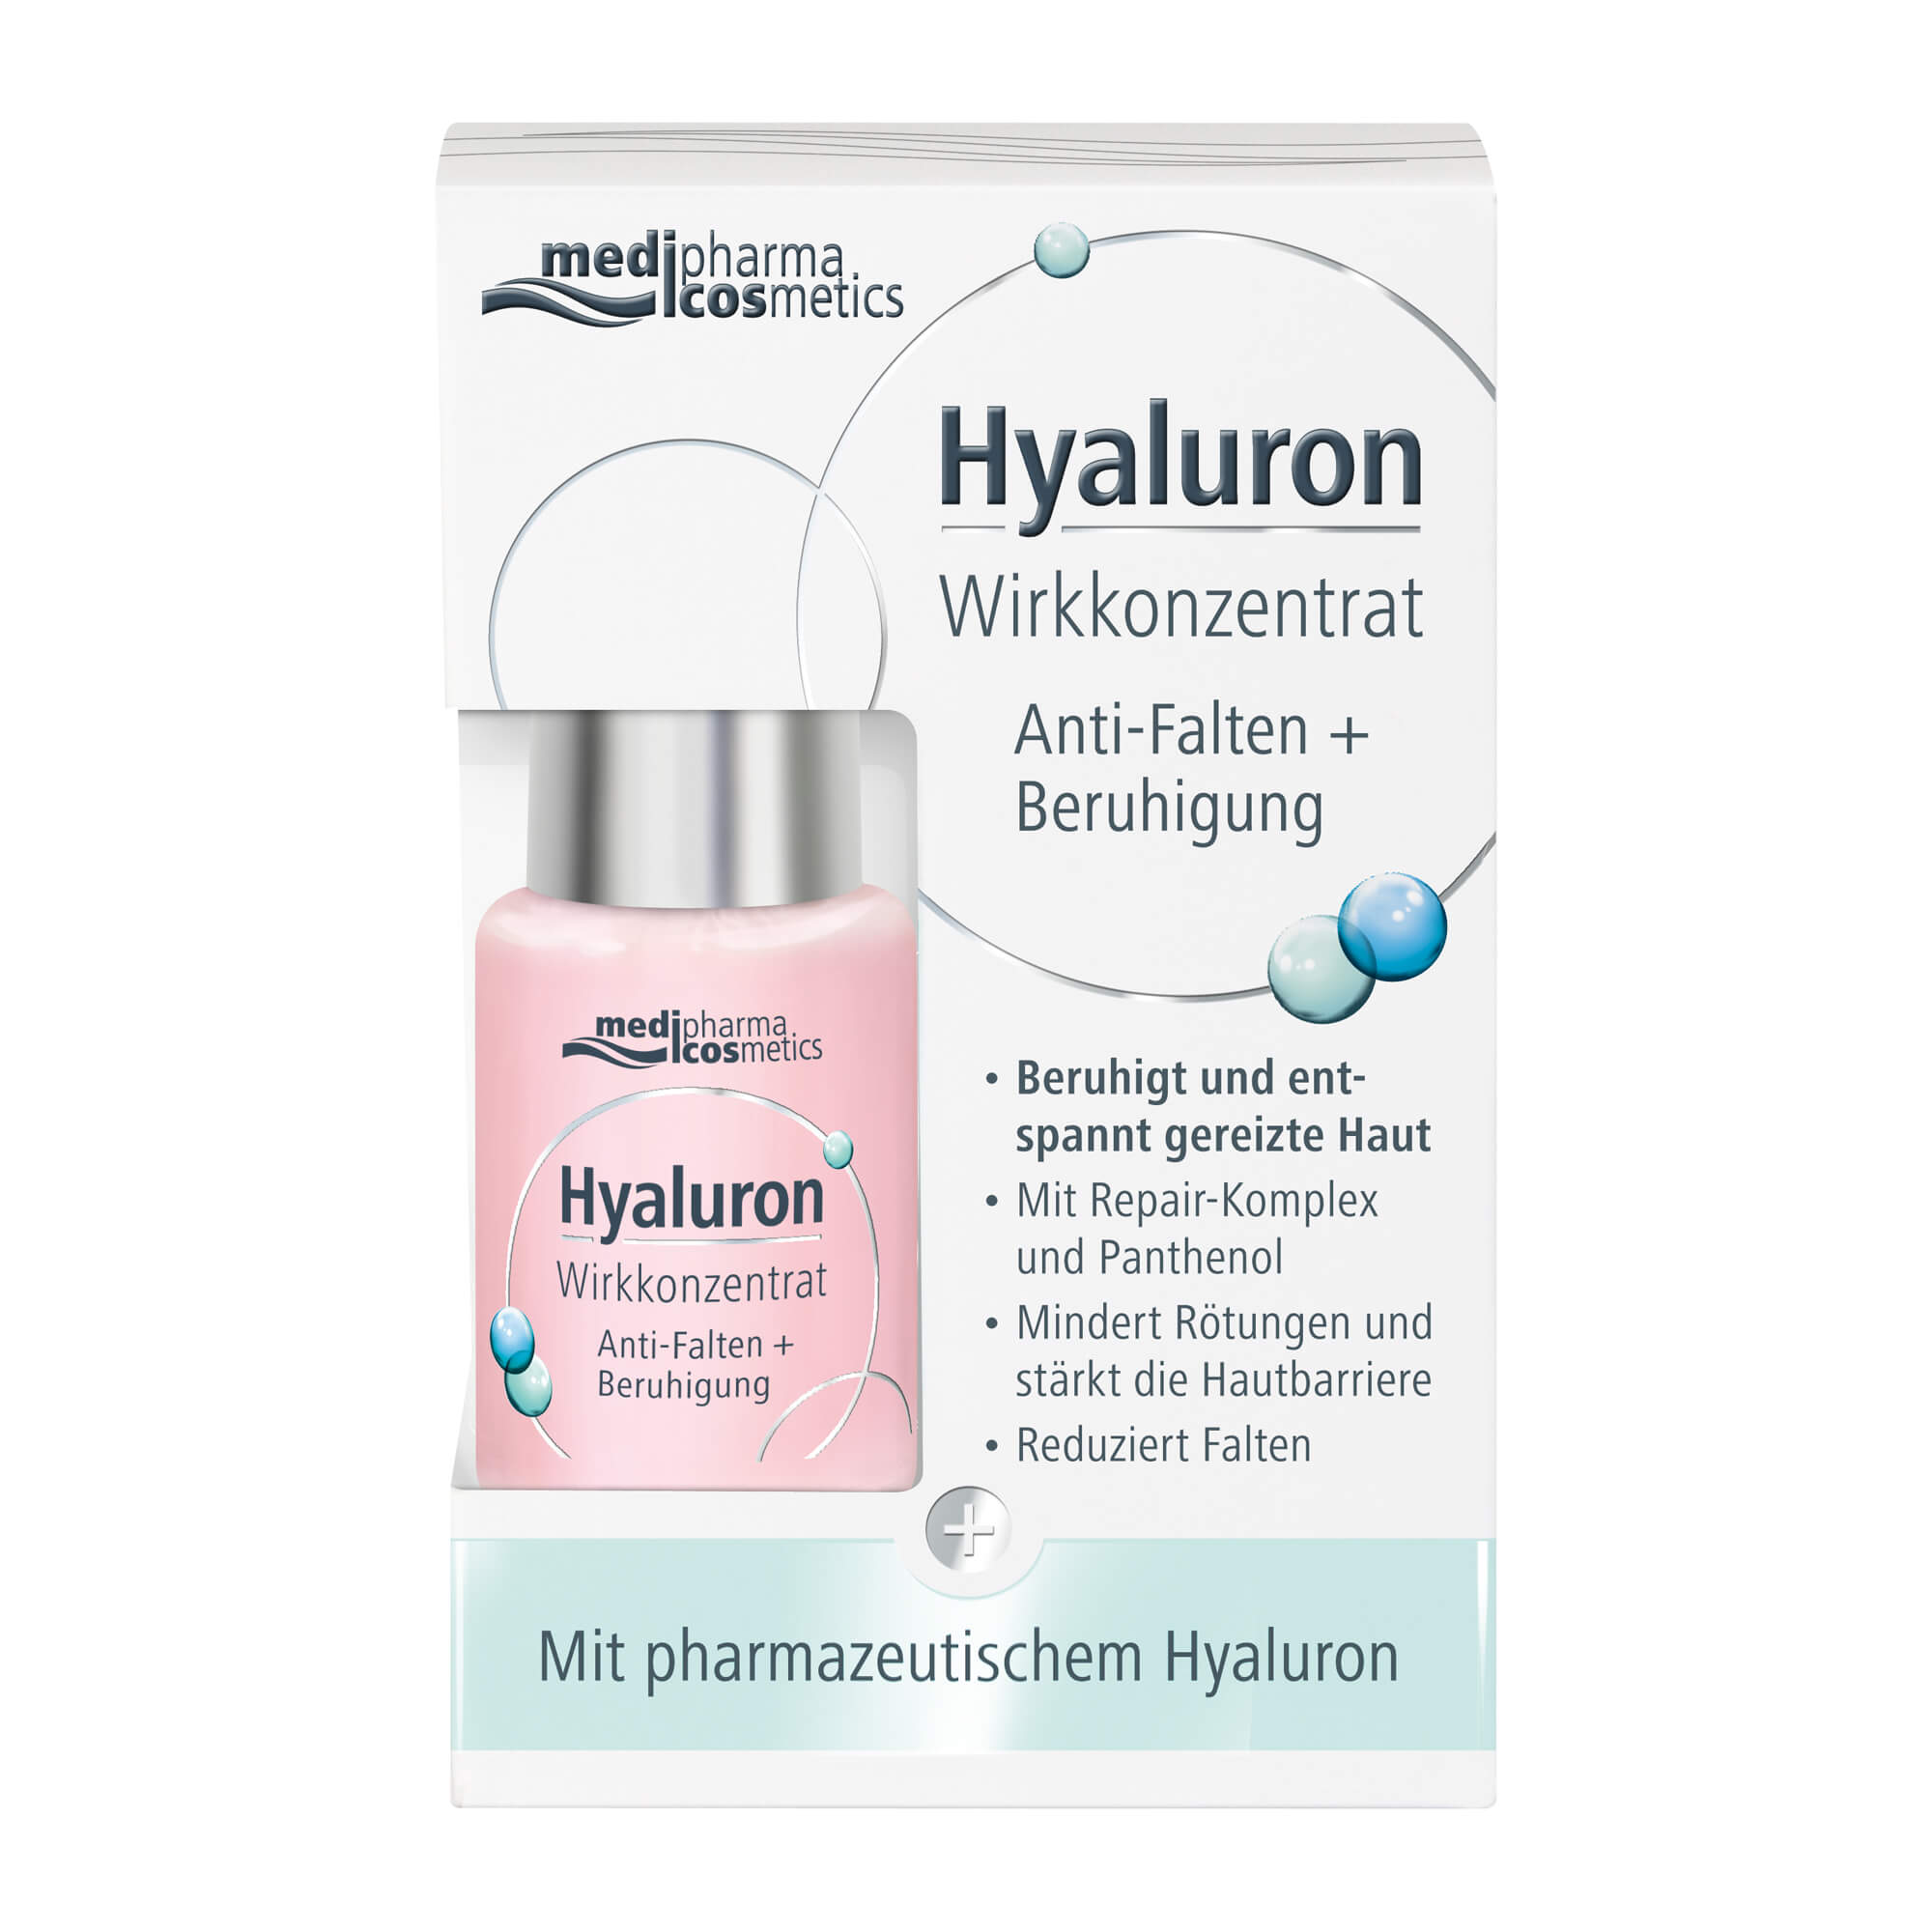 Hyaluron Wirkkonzentrat Anti-Falten+Beruhigung